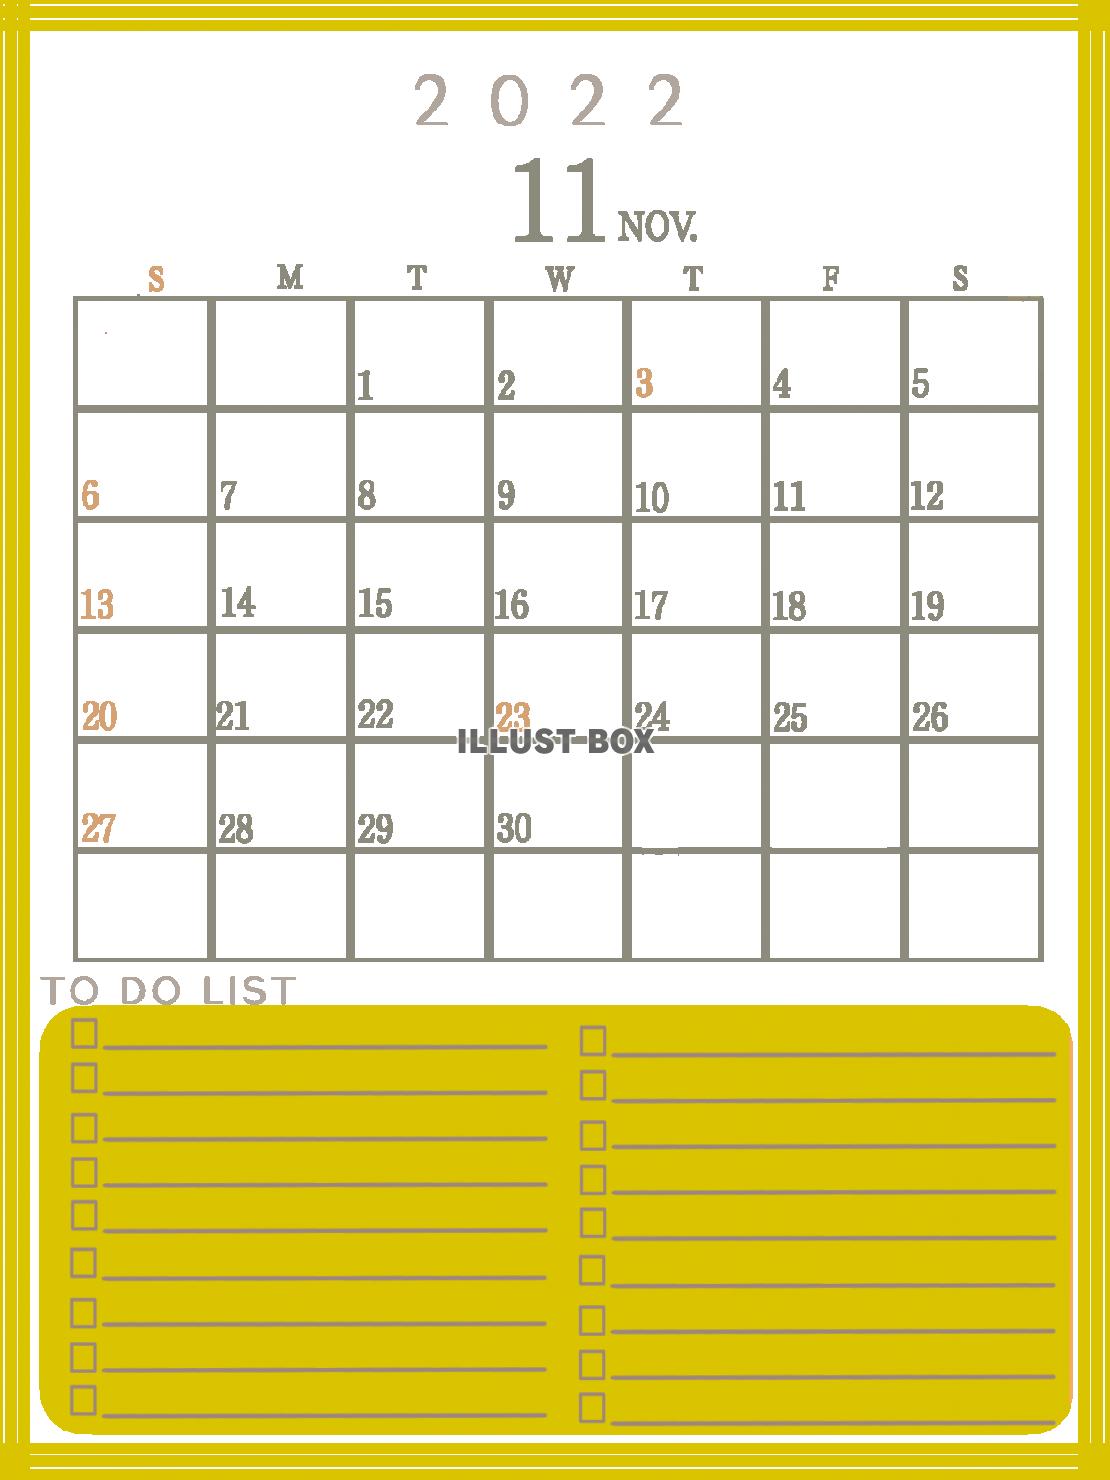 ２０２２年　TODOリストのあるカレンダー　（１１月）